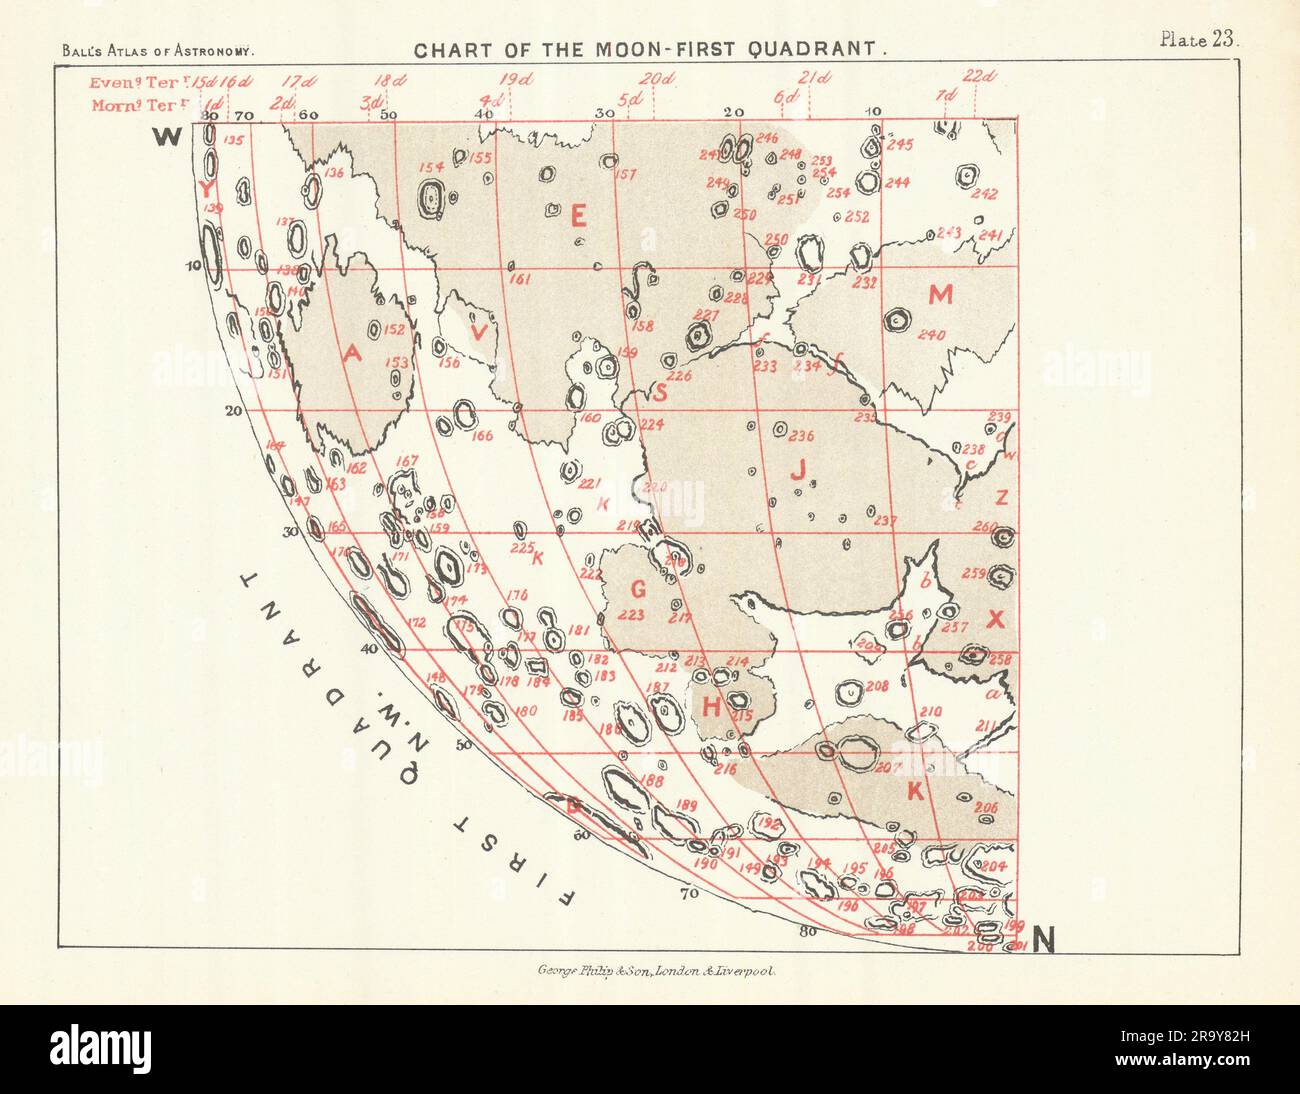 Diagramm des Mond-1.-Quadranten - Nordwesten - von Robert Ball. Astronomie-1892-Karte Stockfoto